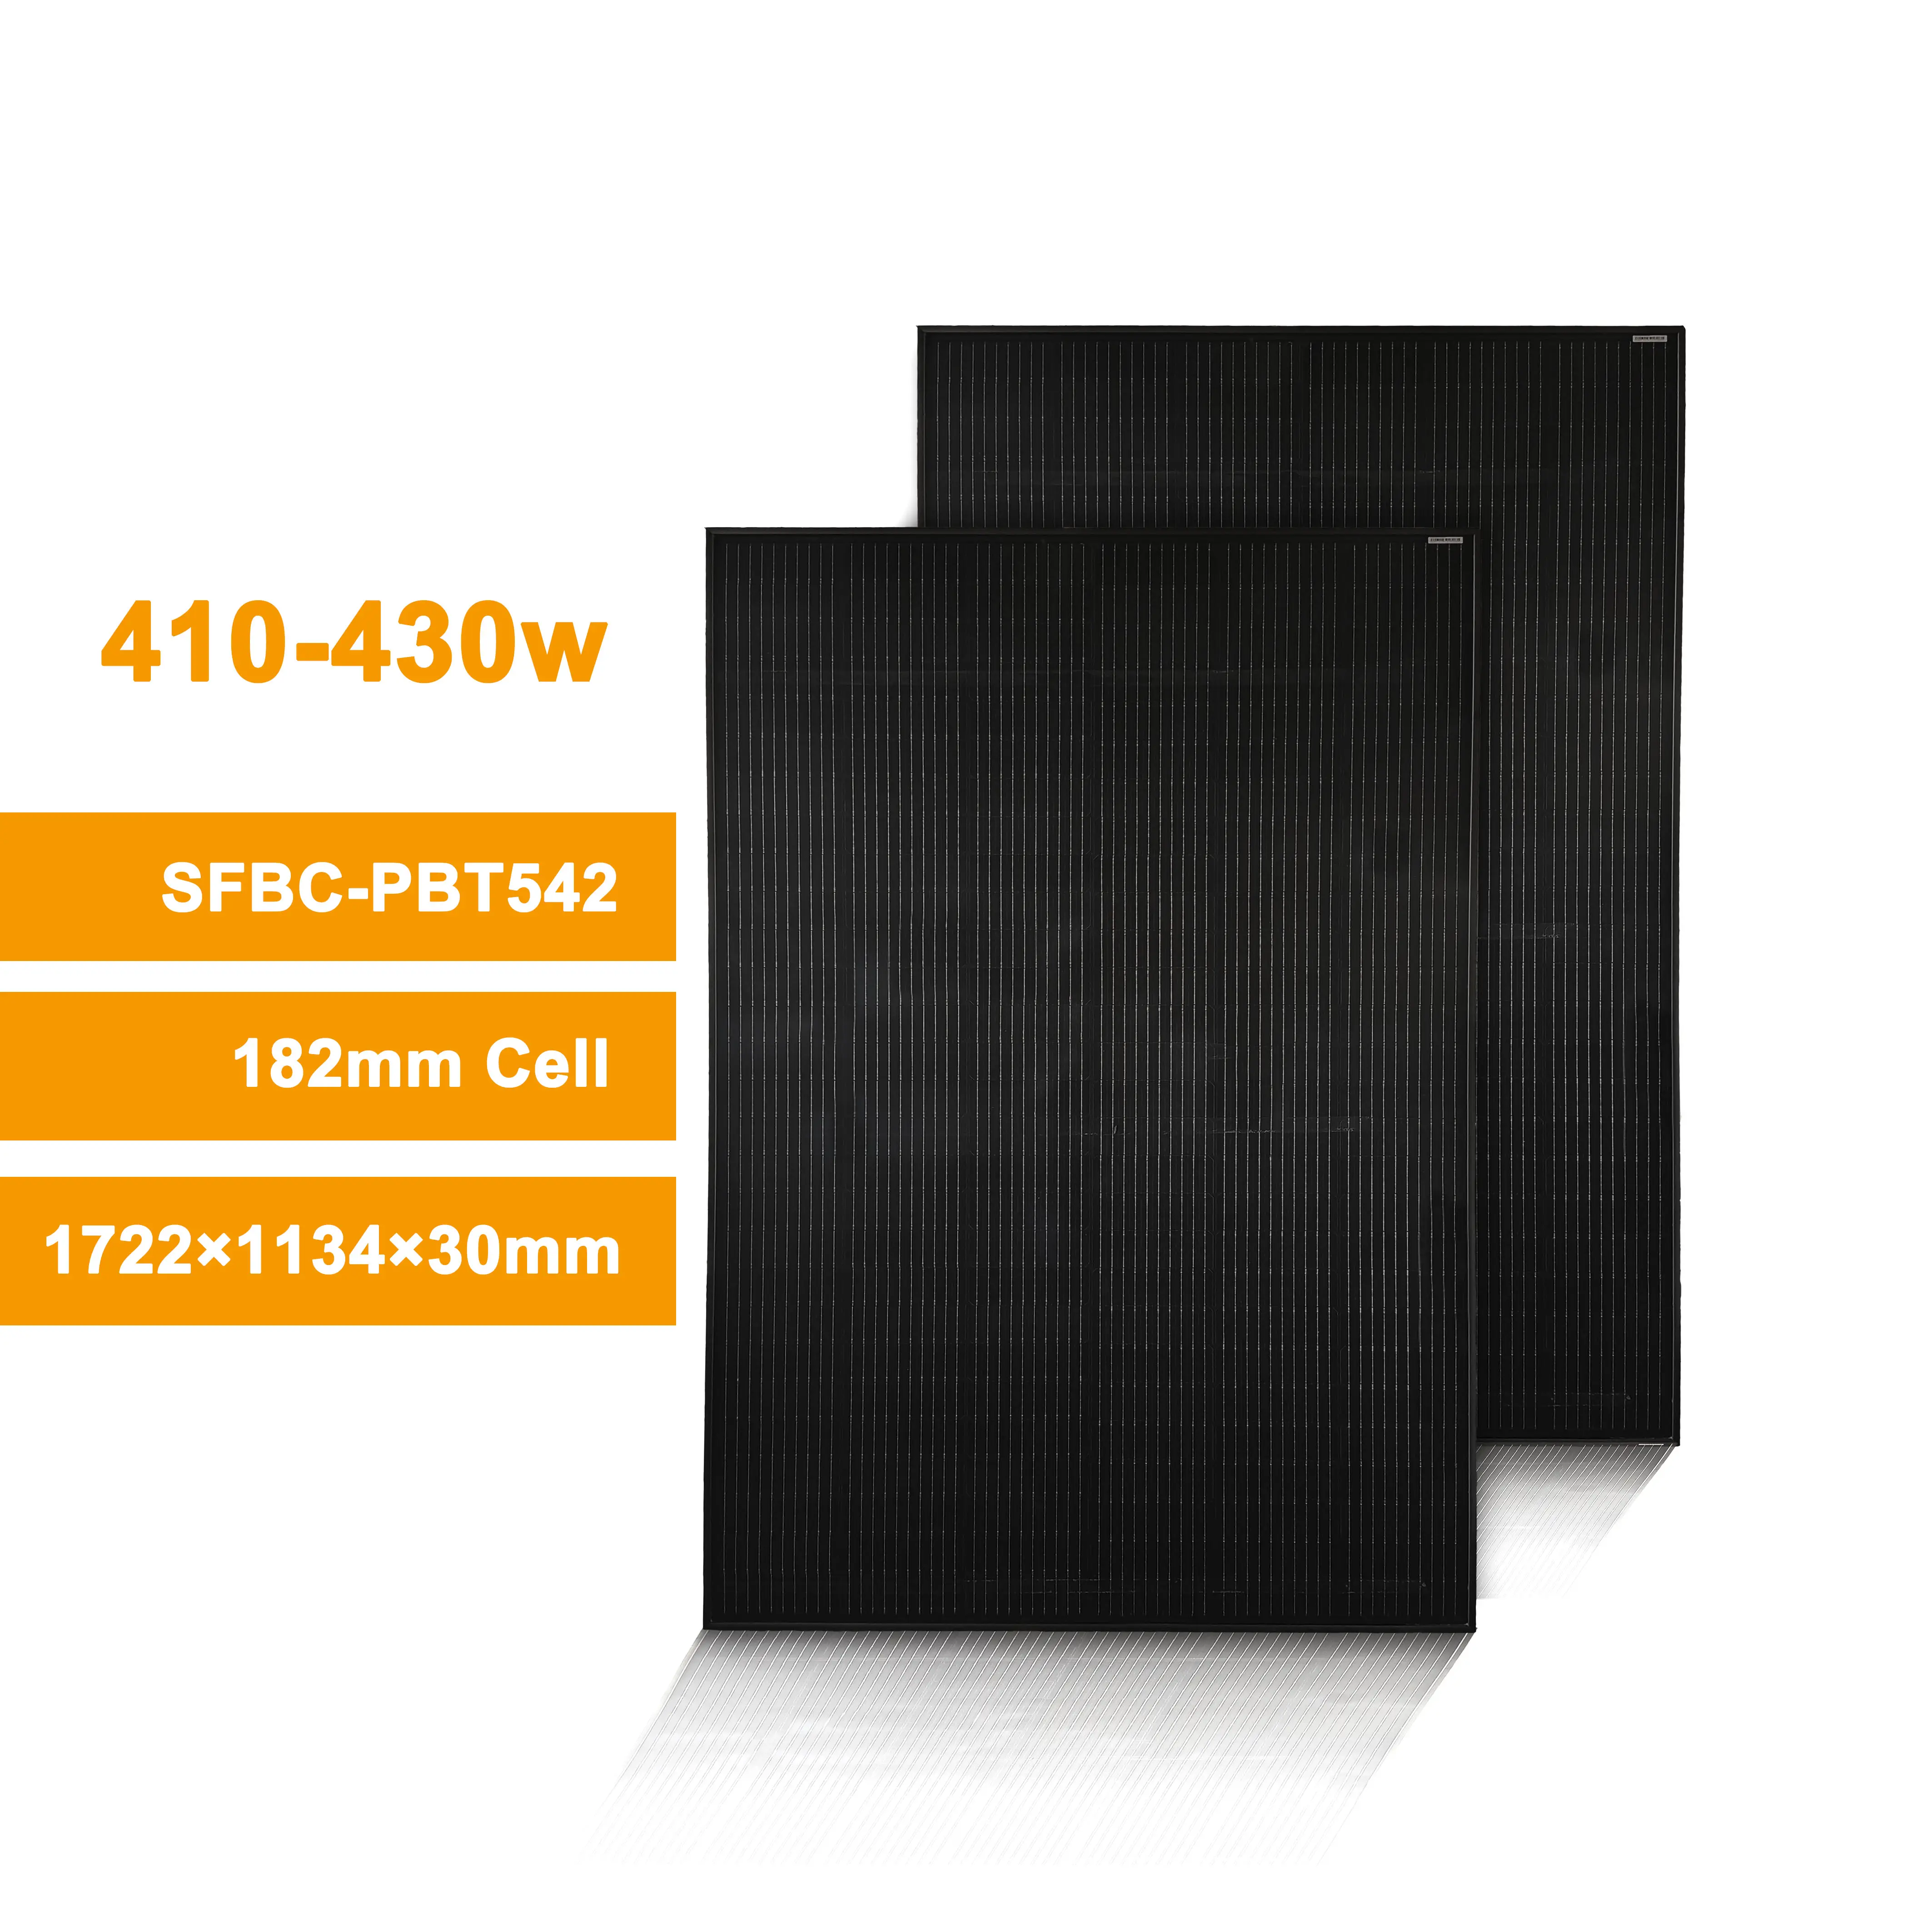 Pannello fotovoltaico in silicone monocristallino 400W pannelli fotovoltaici con potenza massima di 450W 410W per energia solare efficiente